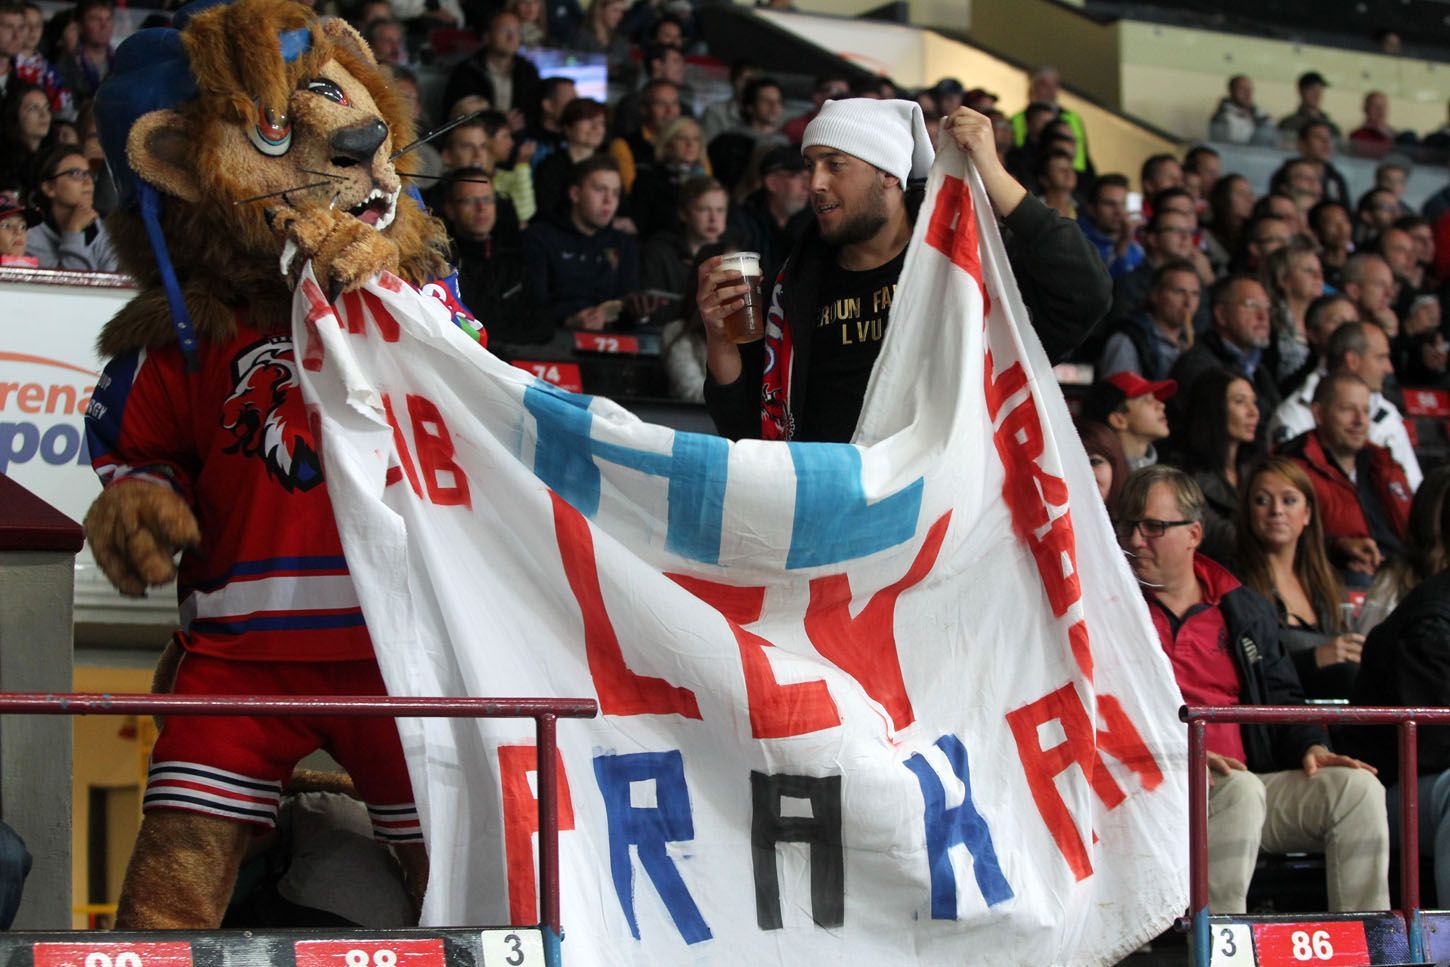 Hokej, KHL, Lev Praha - Dynamo Moskva: maskot s transparentem